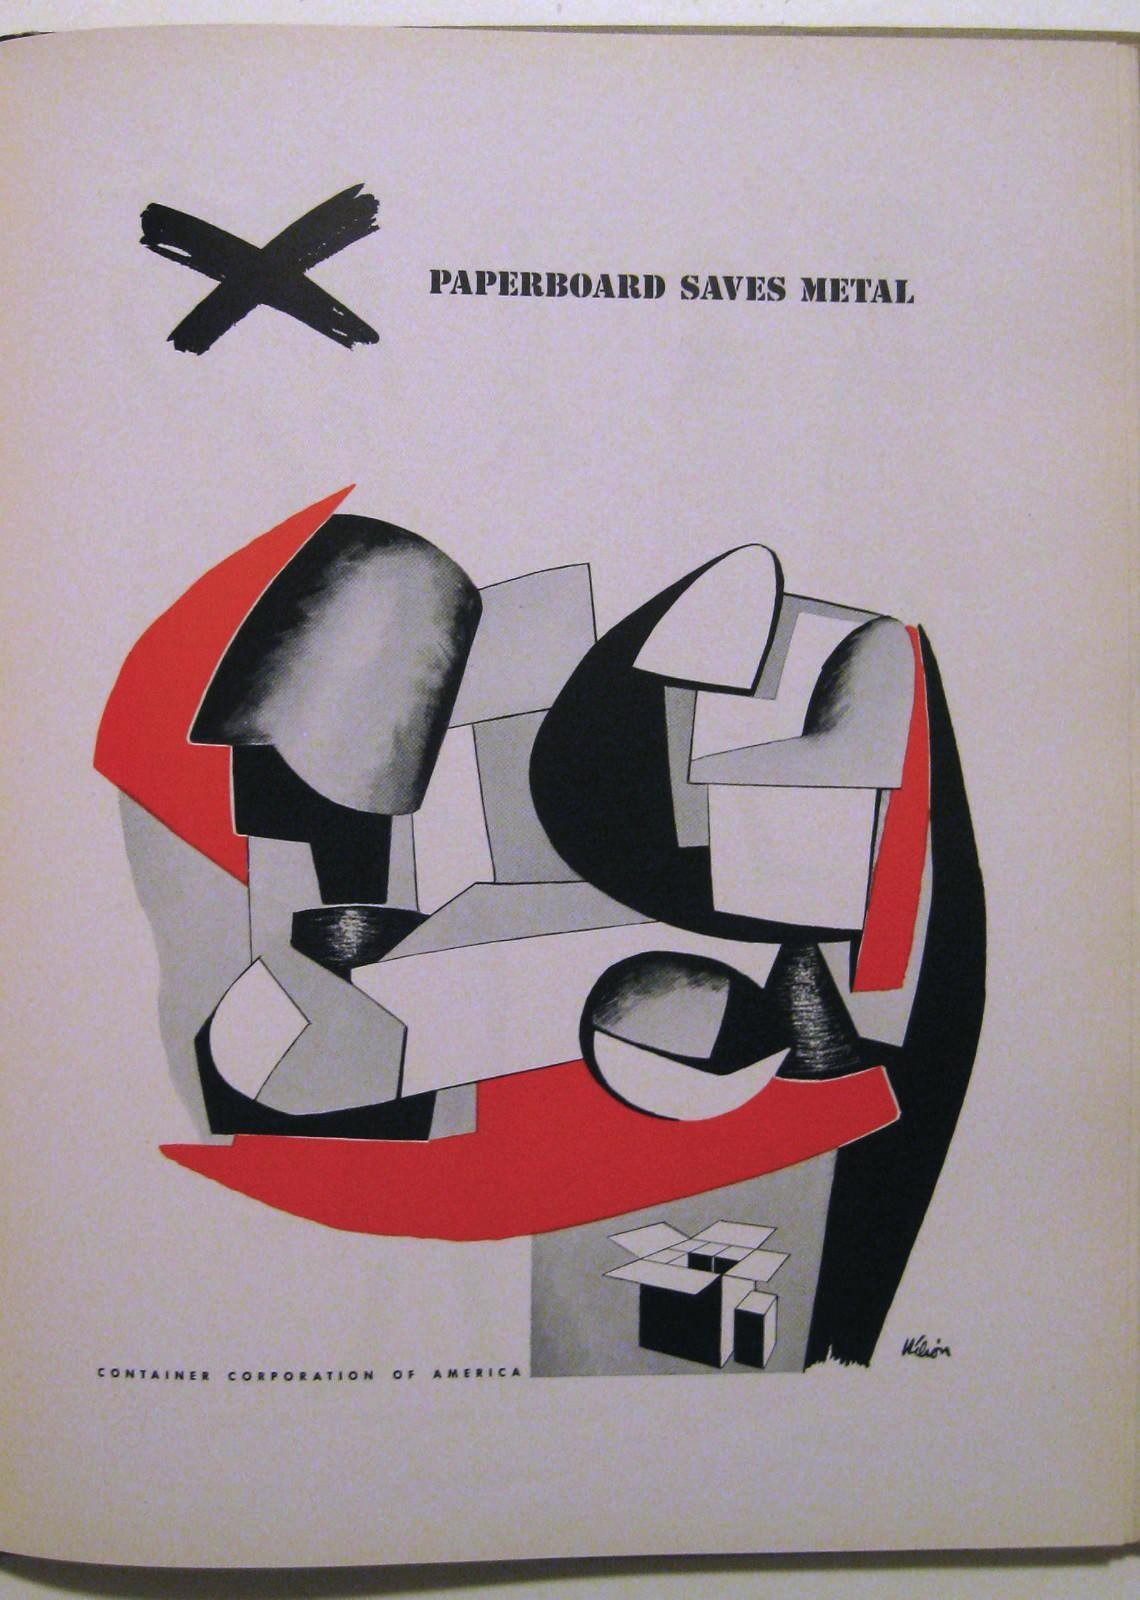 Modern Art in Advertising | Paul Rand: Modernist Master 1914-1996